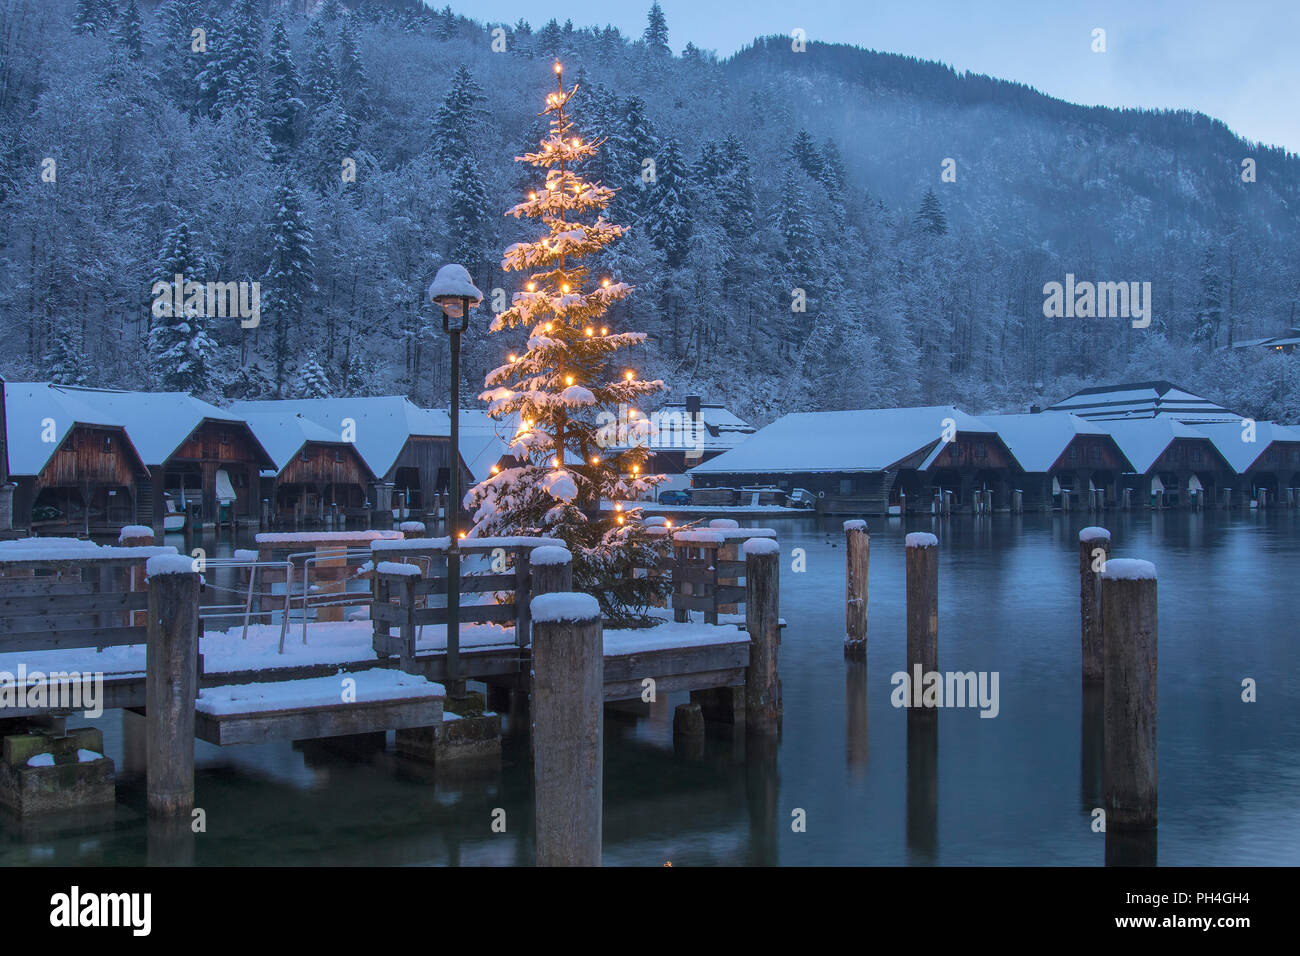 Die leuchtenden Weihnachtsbaum am Seelaende am See Königssee mit Boot  Hütten im Hintergrund. Berchtesgadener Land, Bayern, Deutschland  Stockfotografie - Alamy